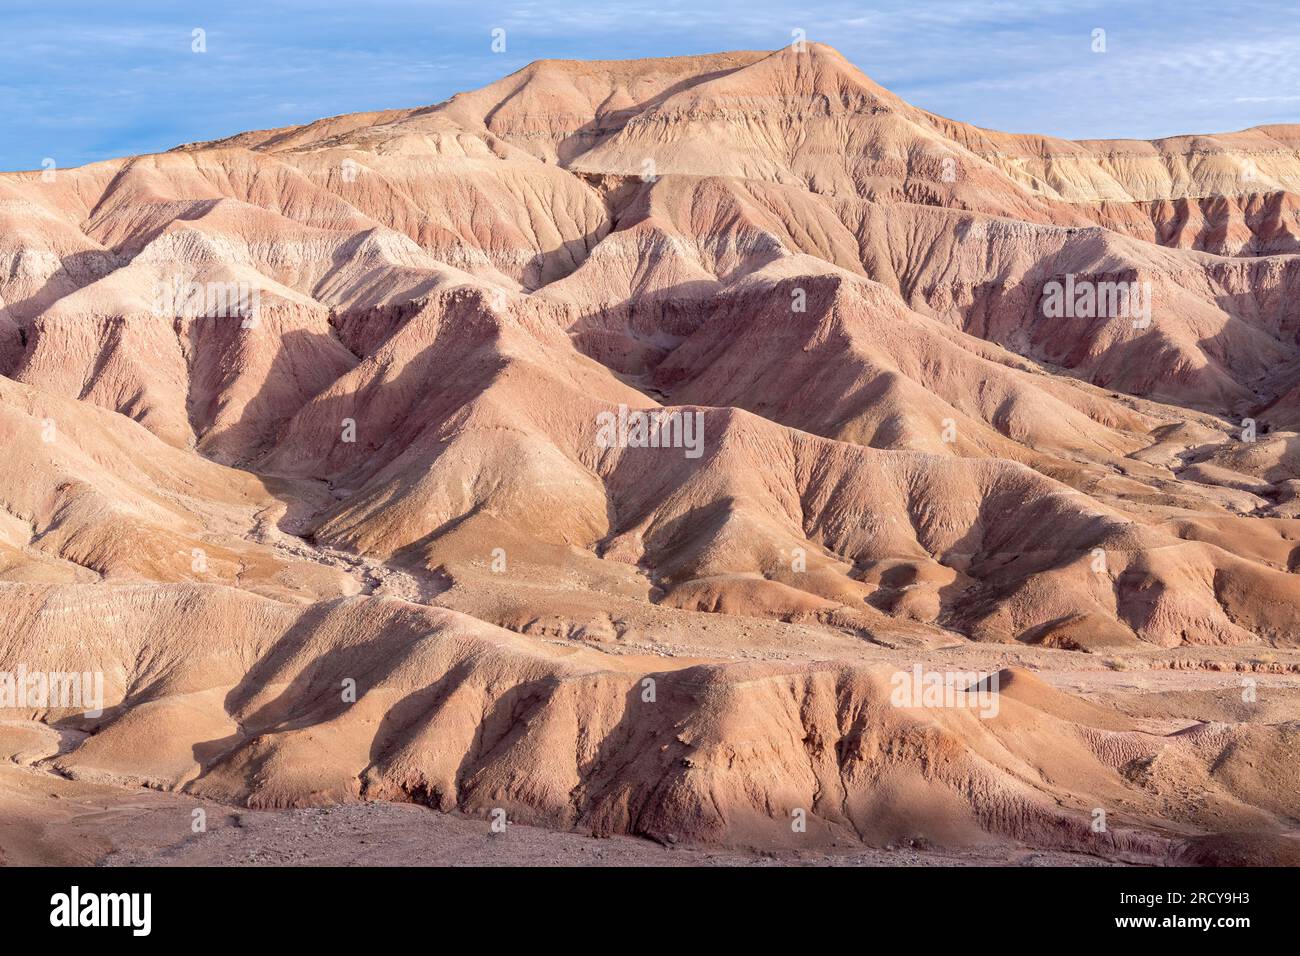 Caractéristiques érosionnelles, mesas, collines et paysage désertique, le désert peint, près de tuba City, AZ, USA, par Dominique Braud/Dembinsky photo Assoc Banque D'Images